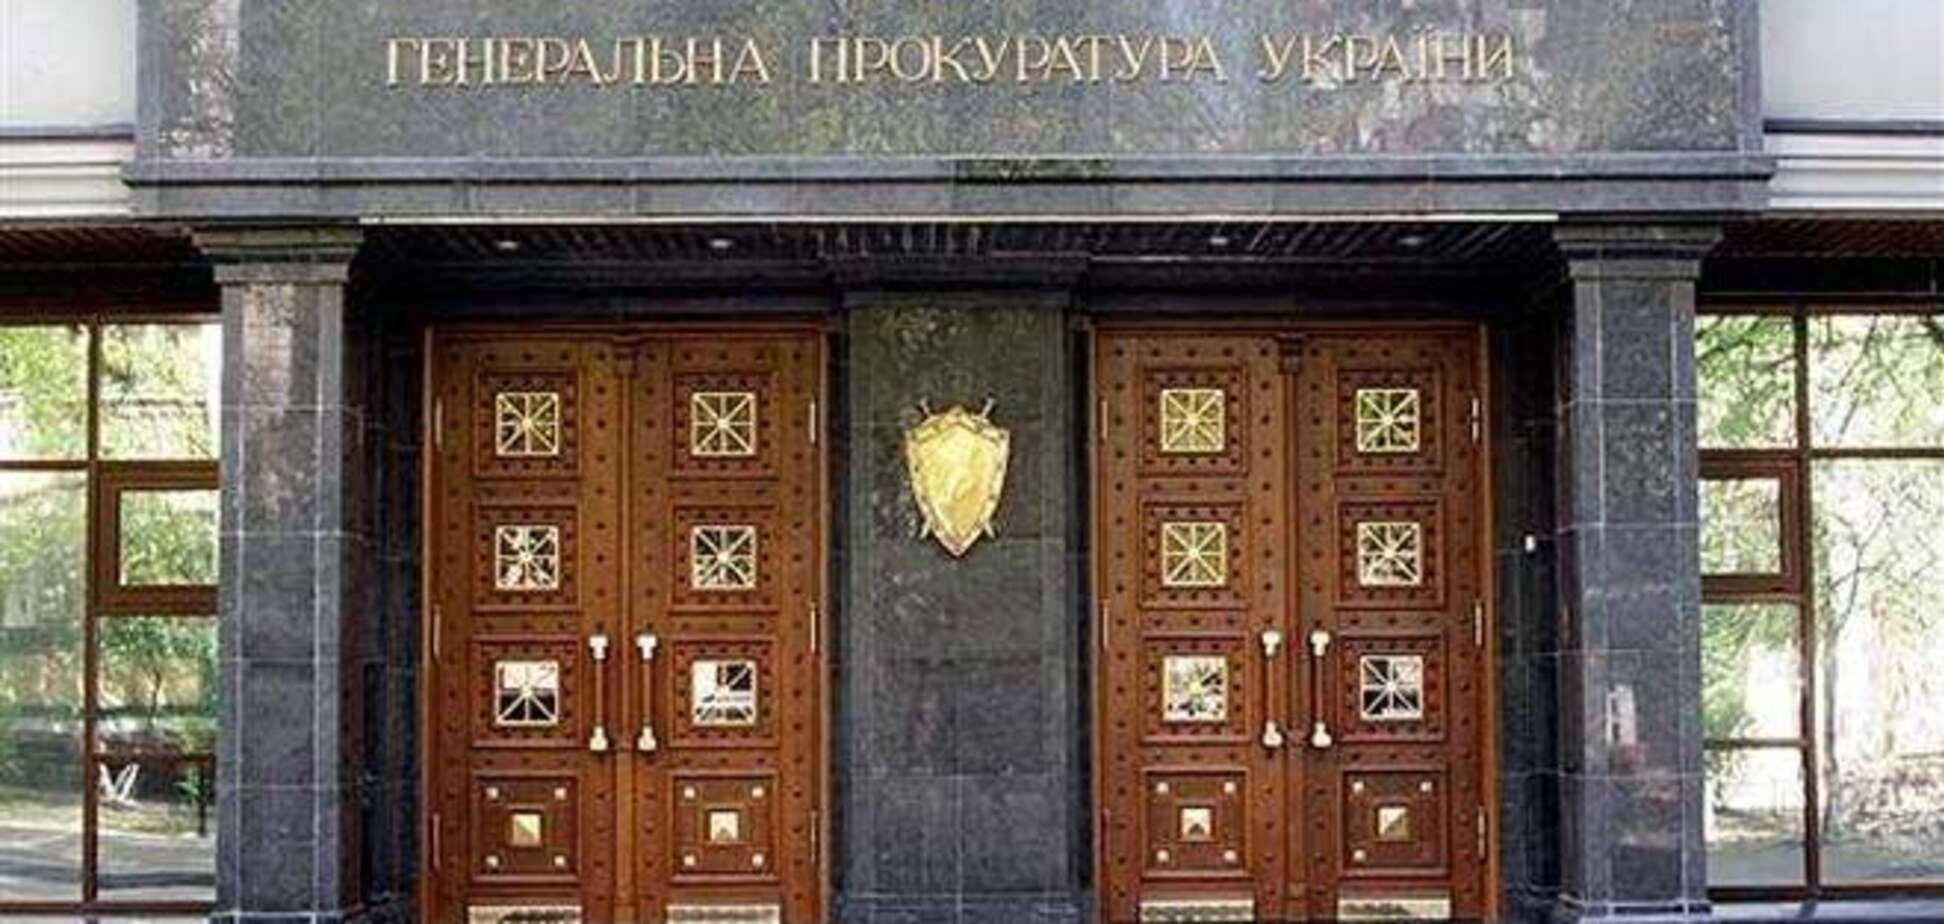 ГПУ предупредила СК РФ о недопустимости вмешательства во внутренние дела Украины